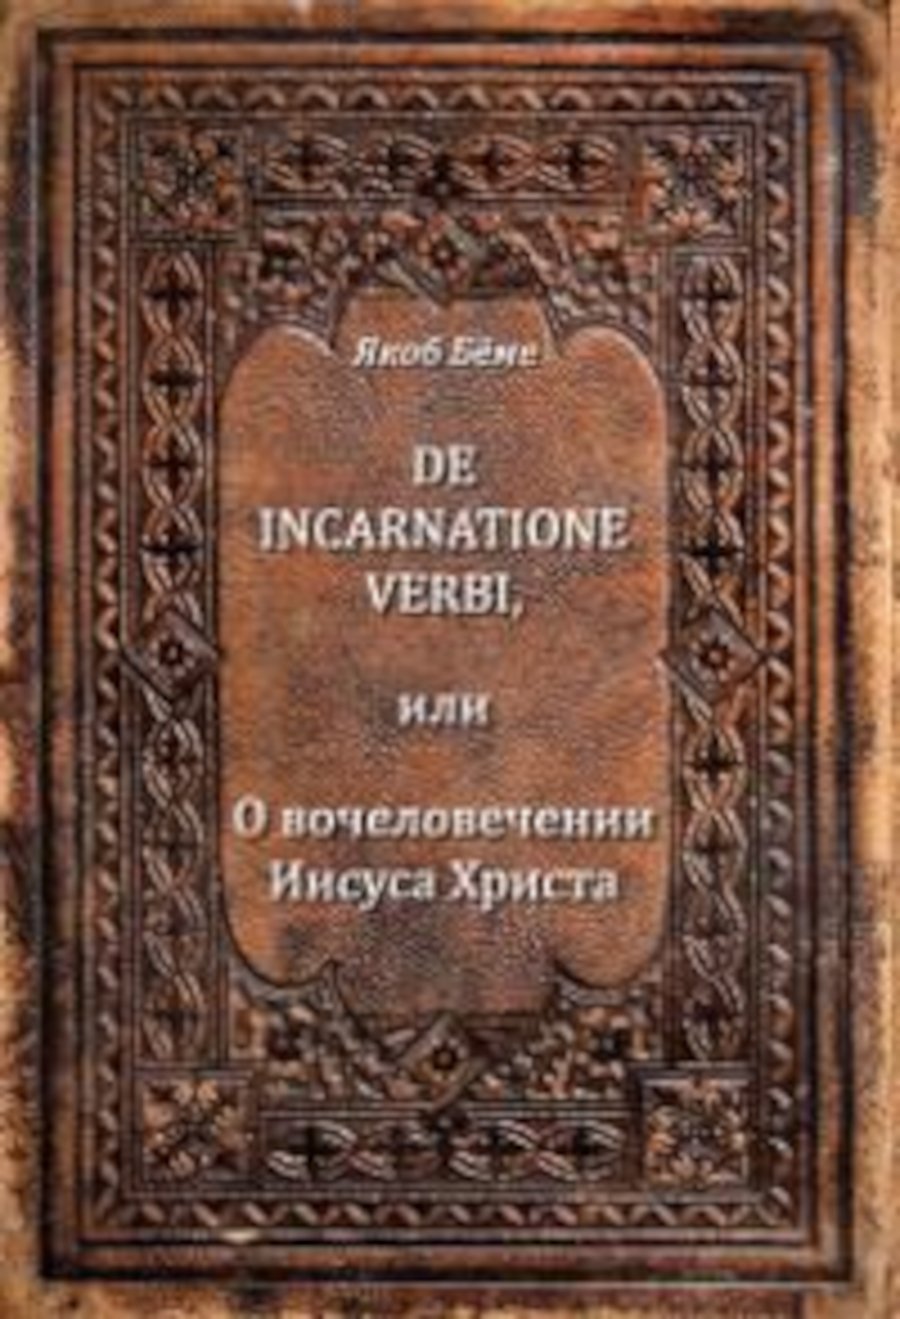 Купить книгу De incarnatione verbi, или О вочеловечении Иисуса Христа Бёме Якоб в интернет-магазине Ариаварта